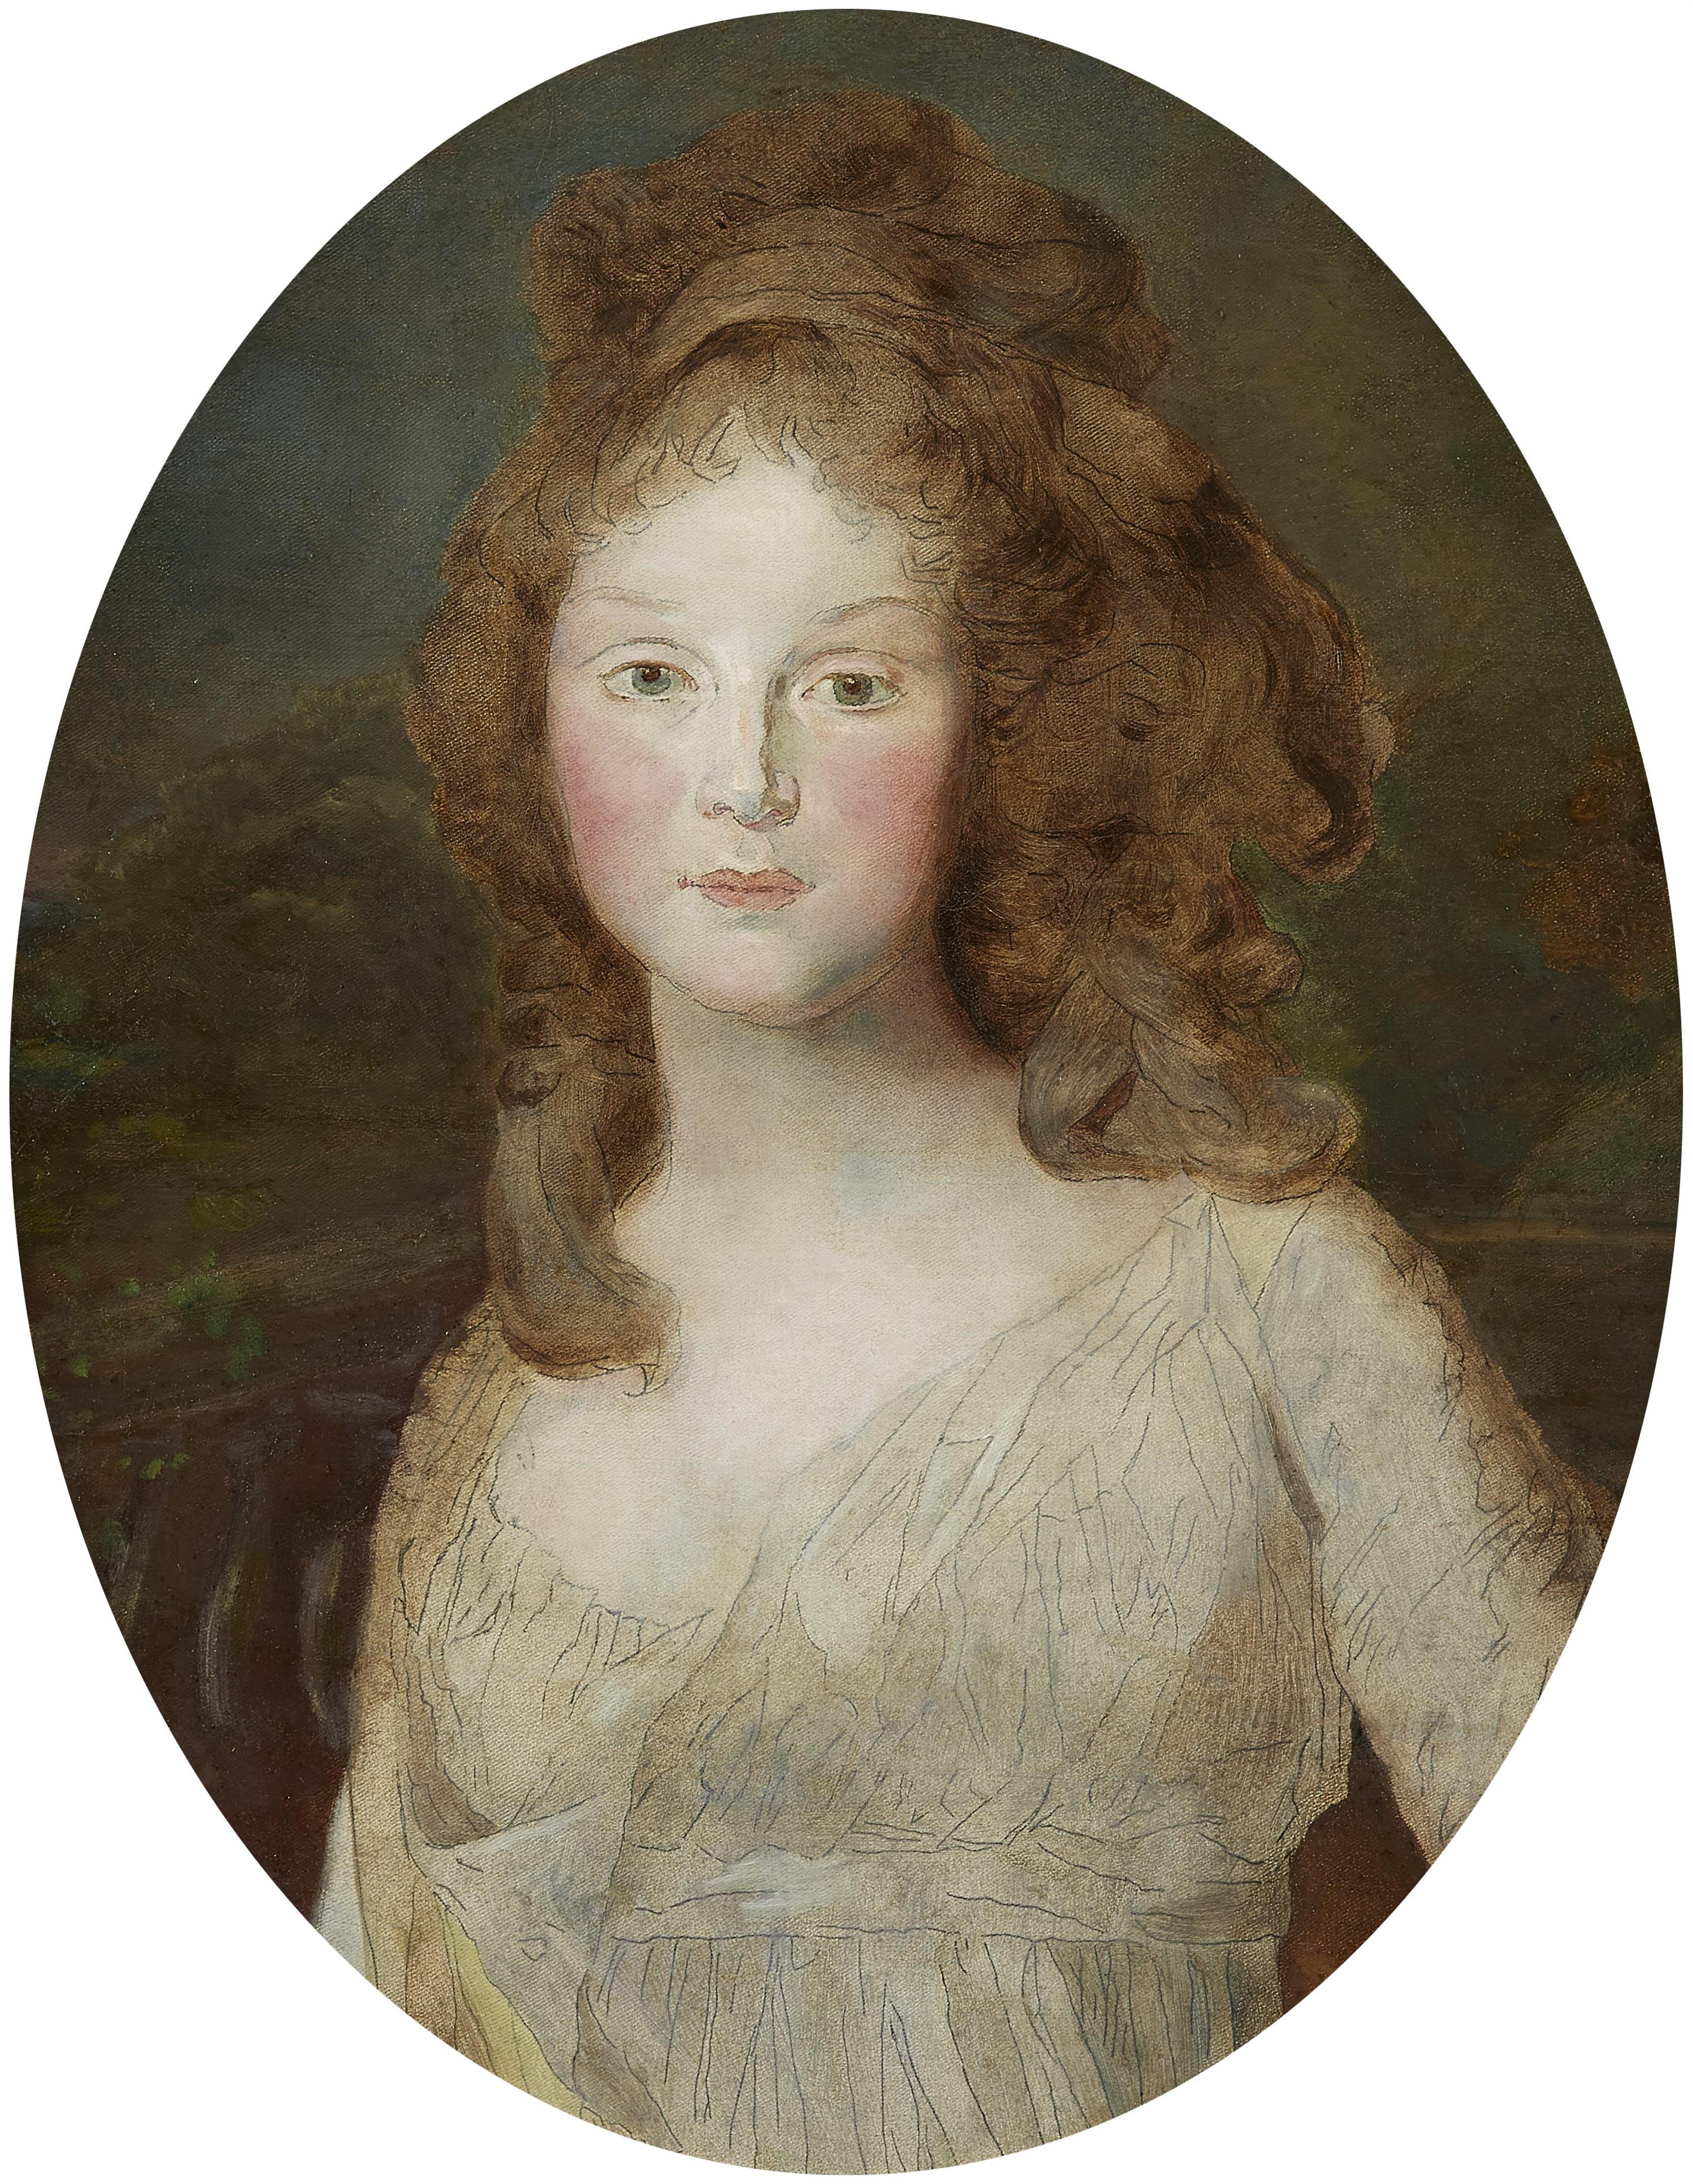 Johann Friedrich August Tischbein - Porträt der Kronprinzessin Luise von Preußen, der späteren Königin Luise (unvollendet)